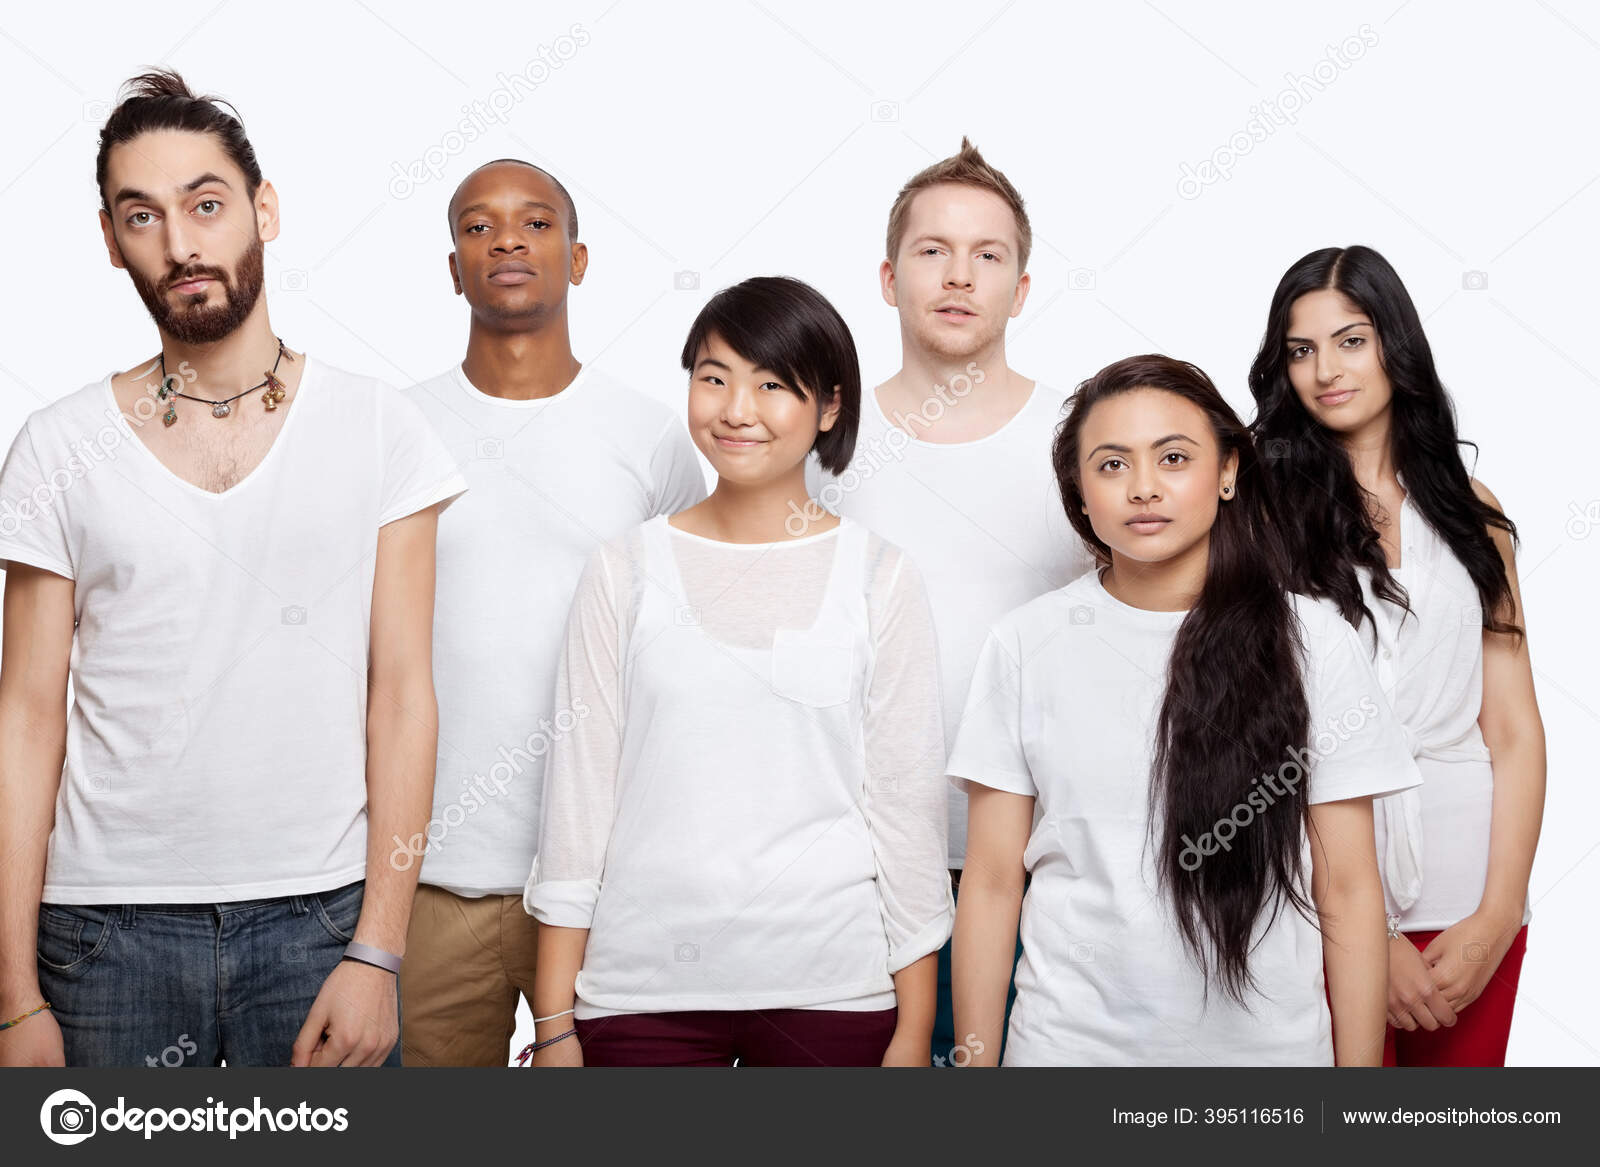 Portræt Hvide Shirts Stående Sammen Hvid Baggrund Stock-foto © londondeposit #395116516